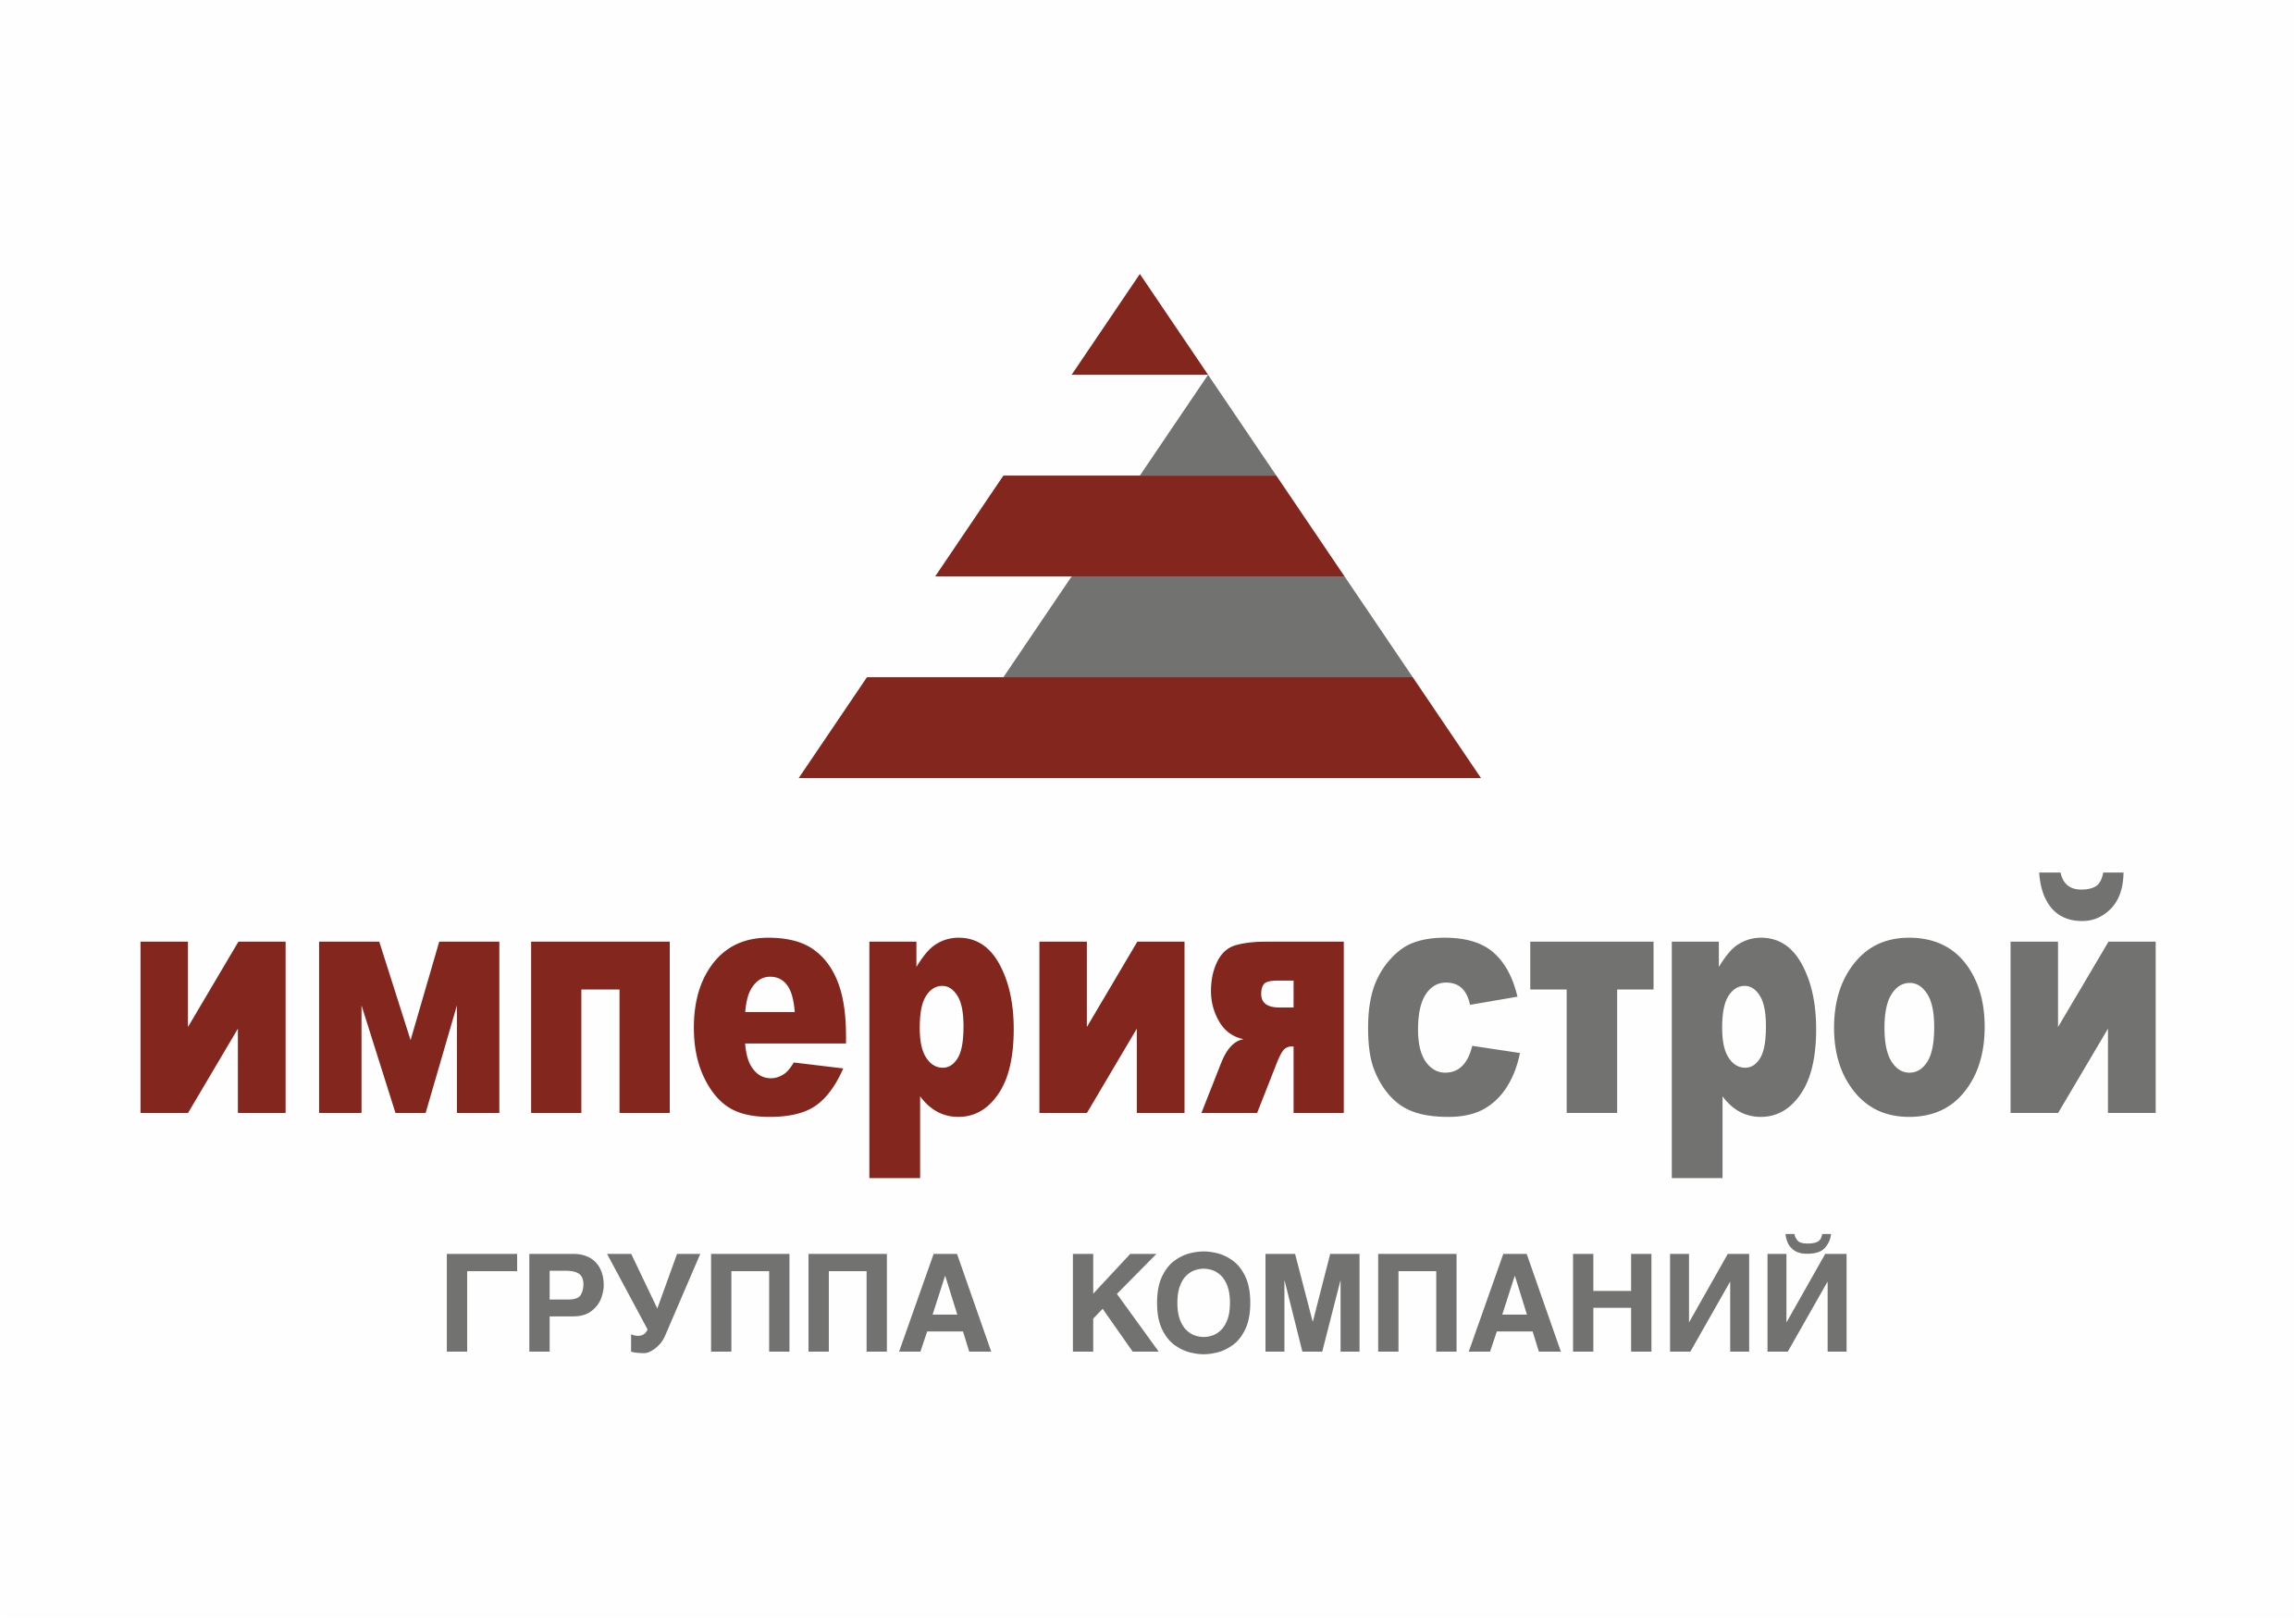 Строительство фирма москва. Логотип строительной фирмы. Название строительных фирм. Логотипы фирм строительных компаний. Строительные компании в Москве.